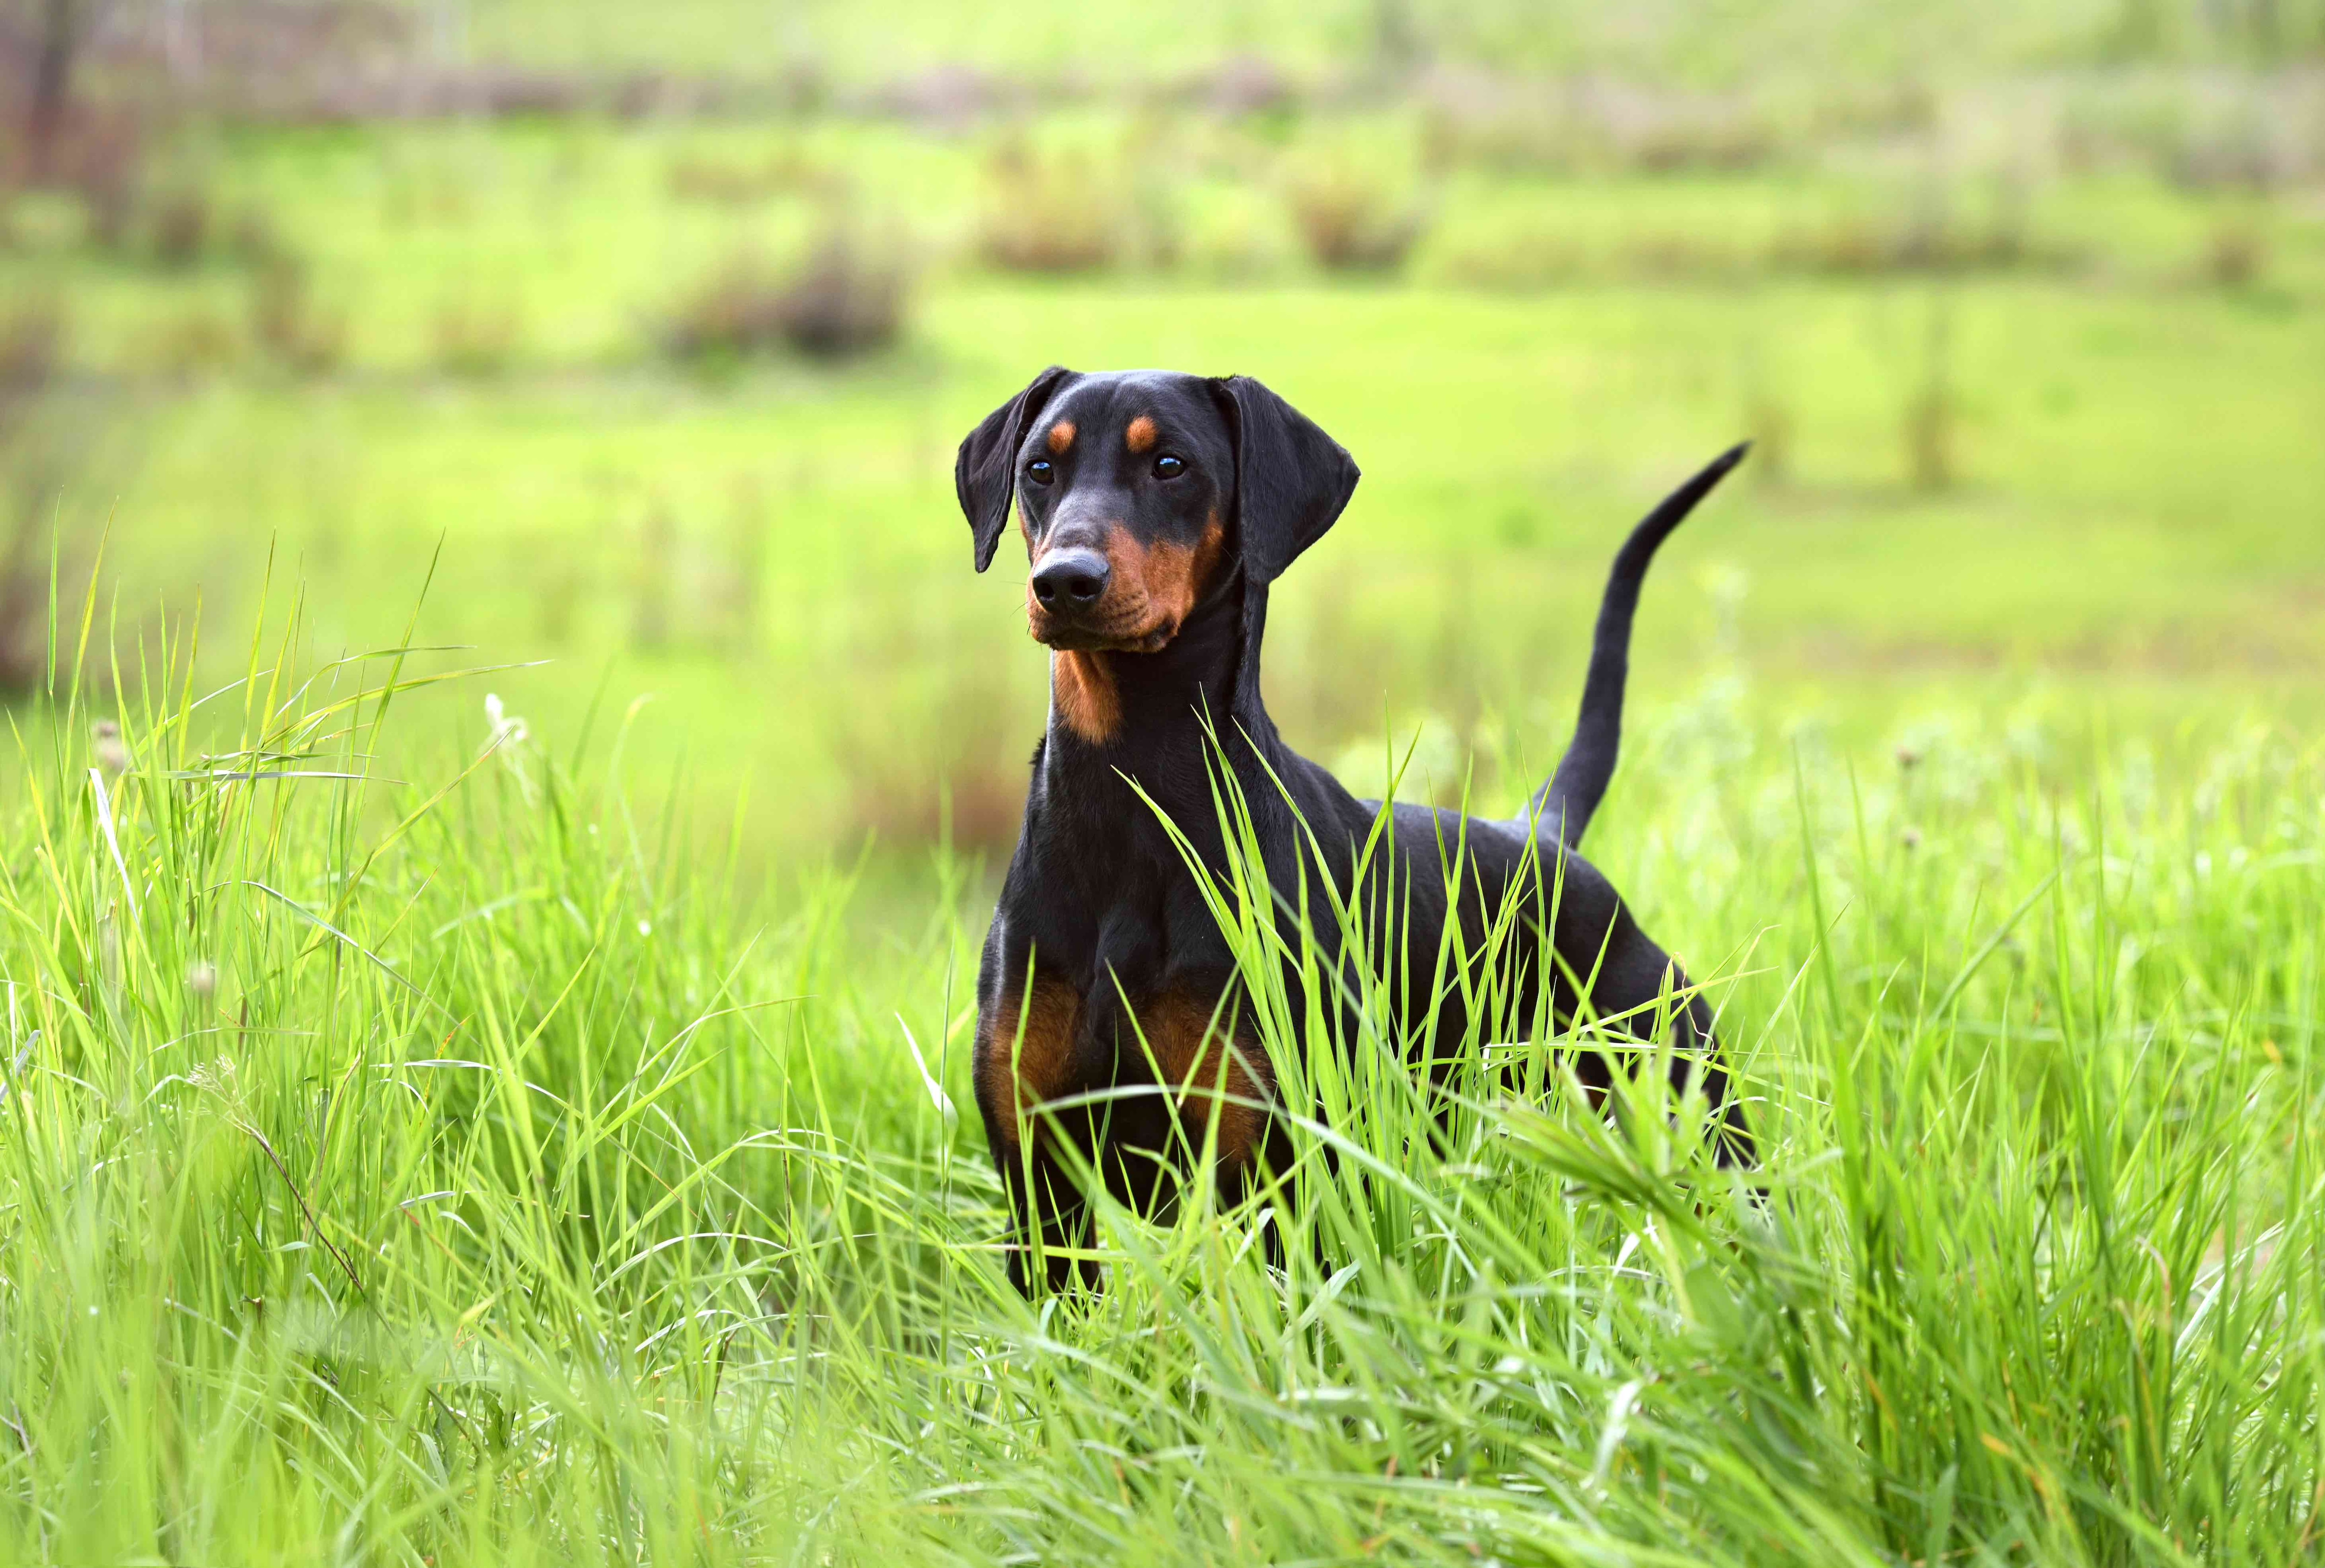 floppy-eared german pinscher dog standing in a field of tall grass